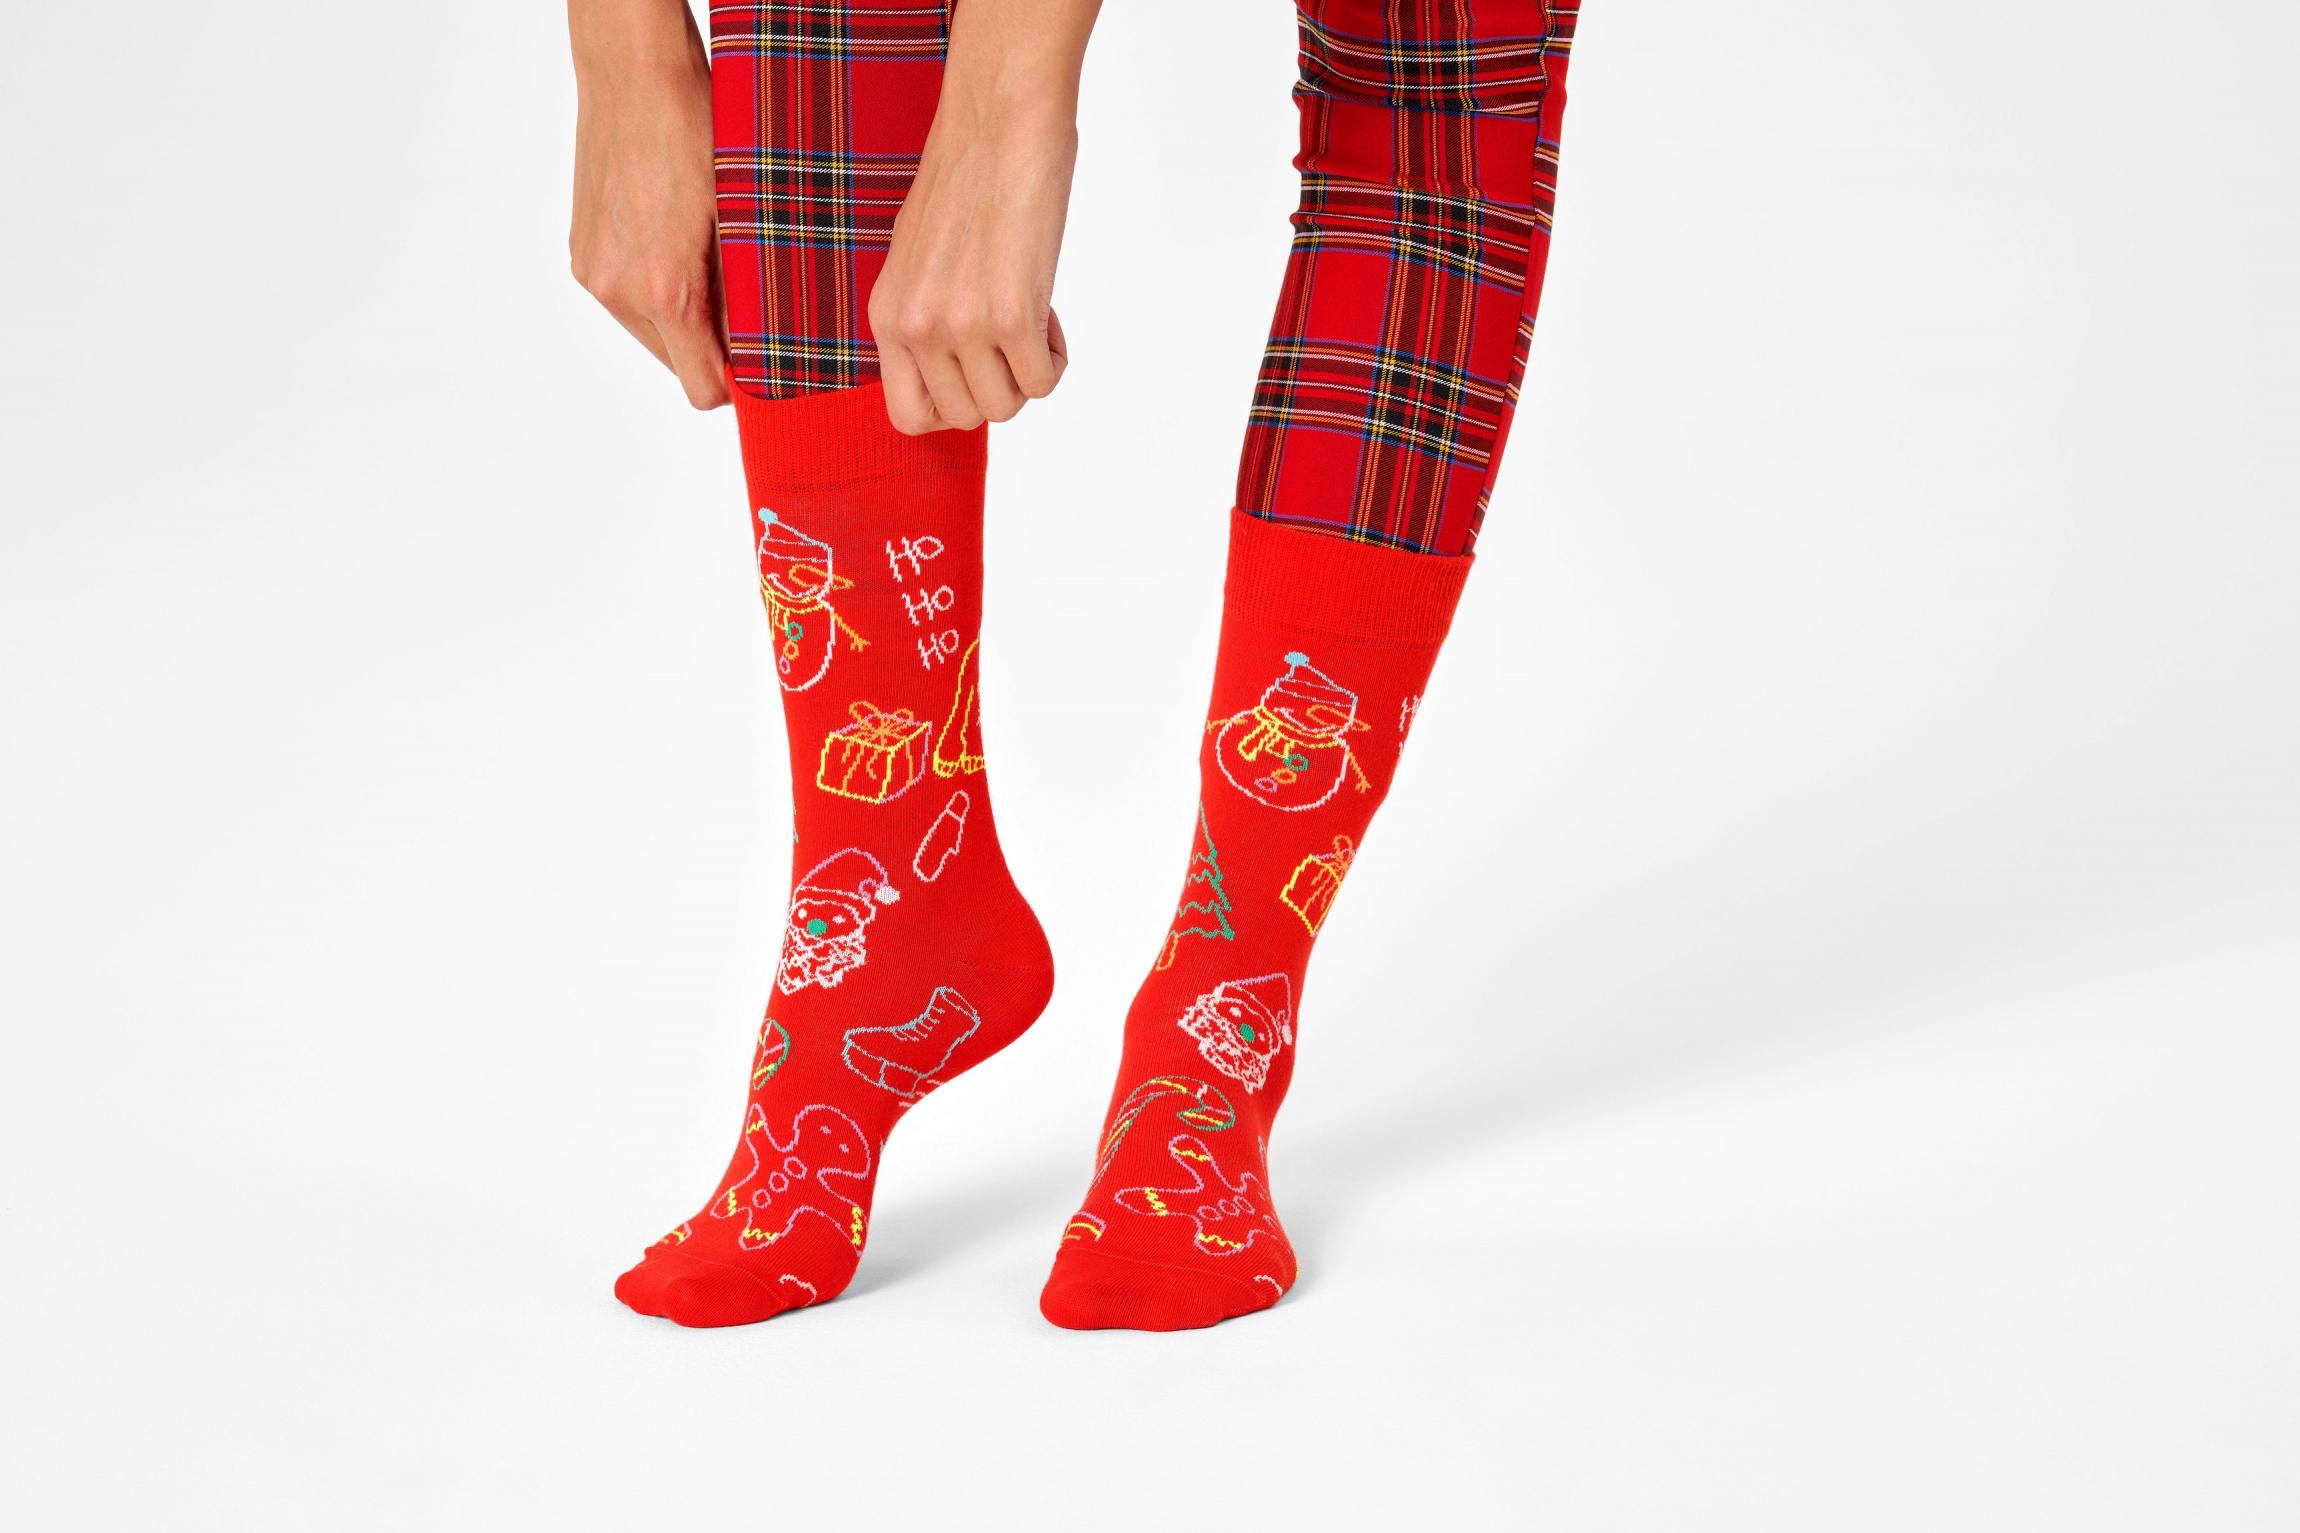 Červené ponožky Happy Socks s vánočními symboly, vzor Ho Ho Ho